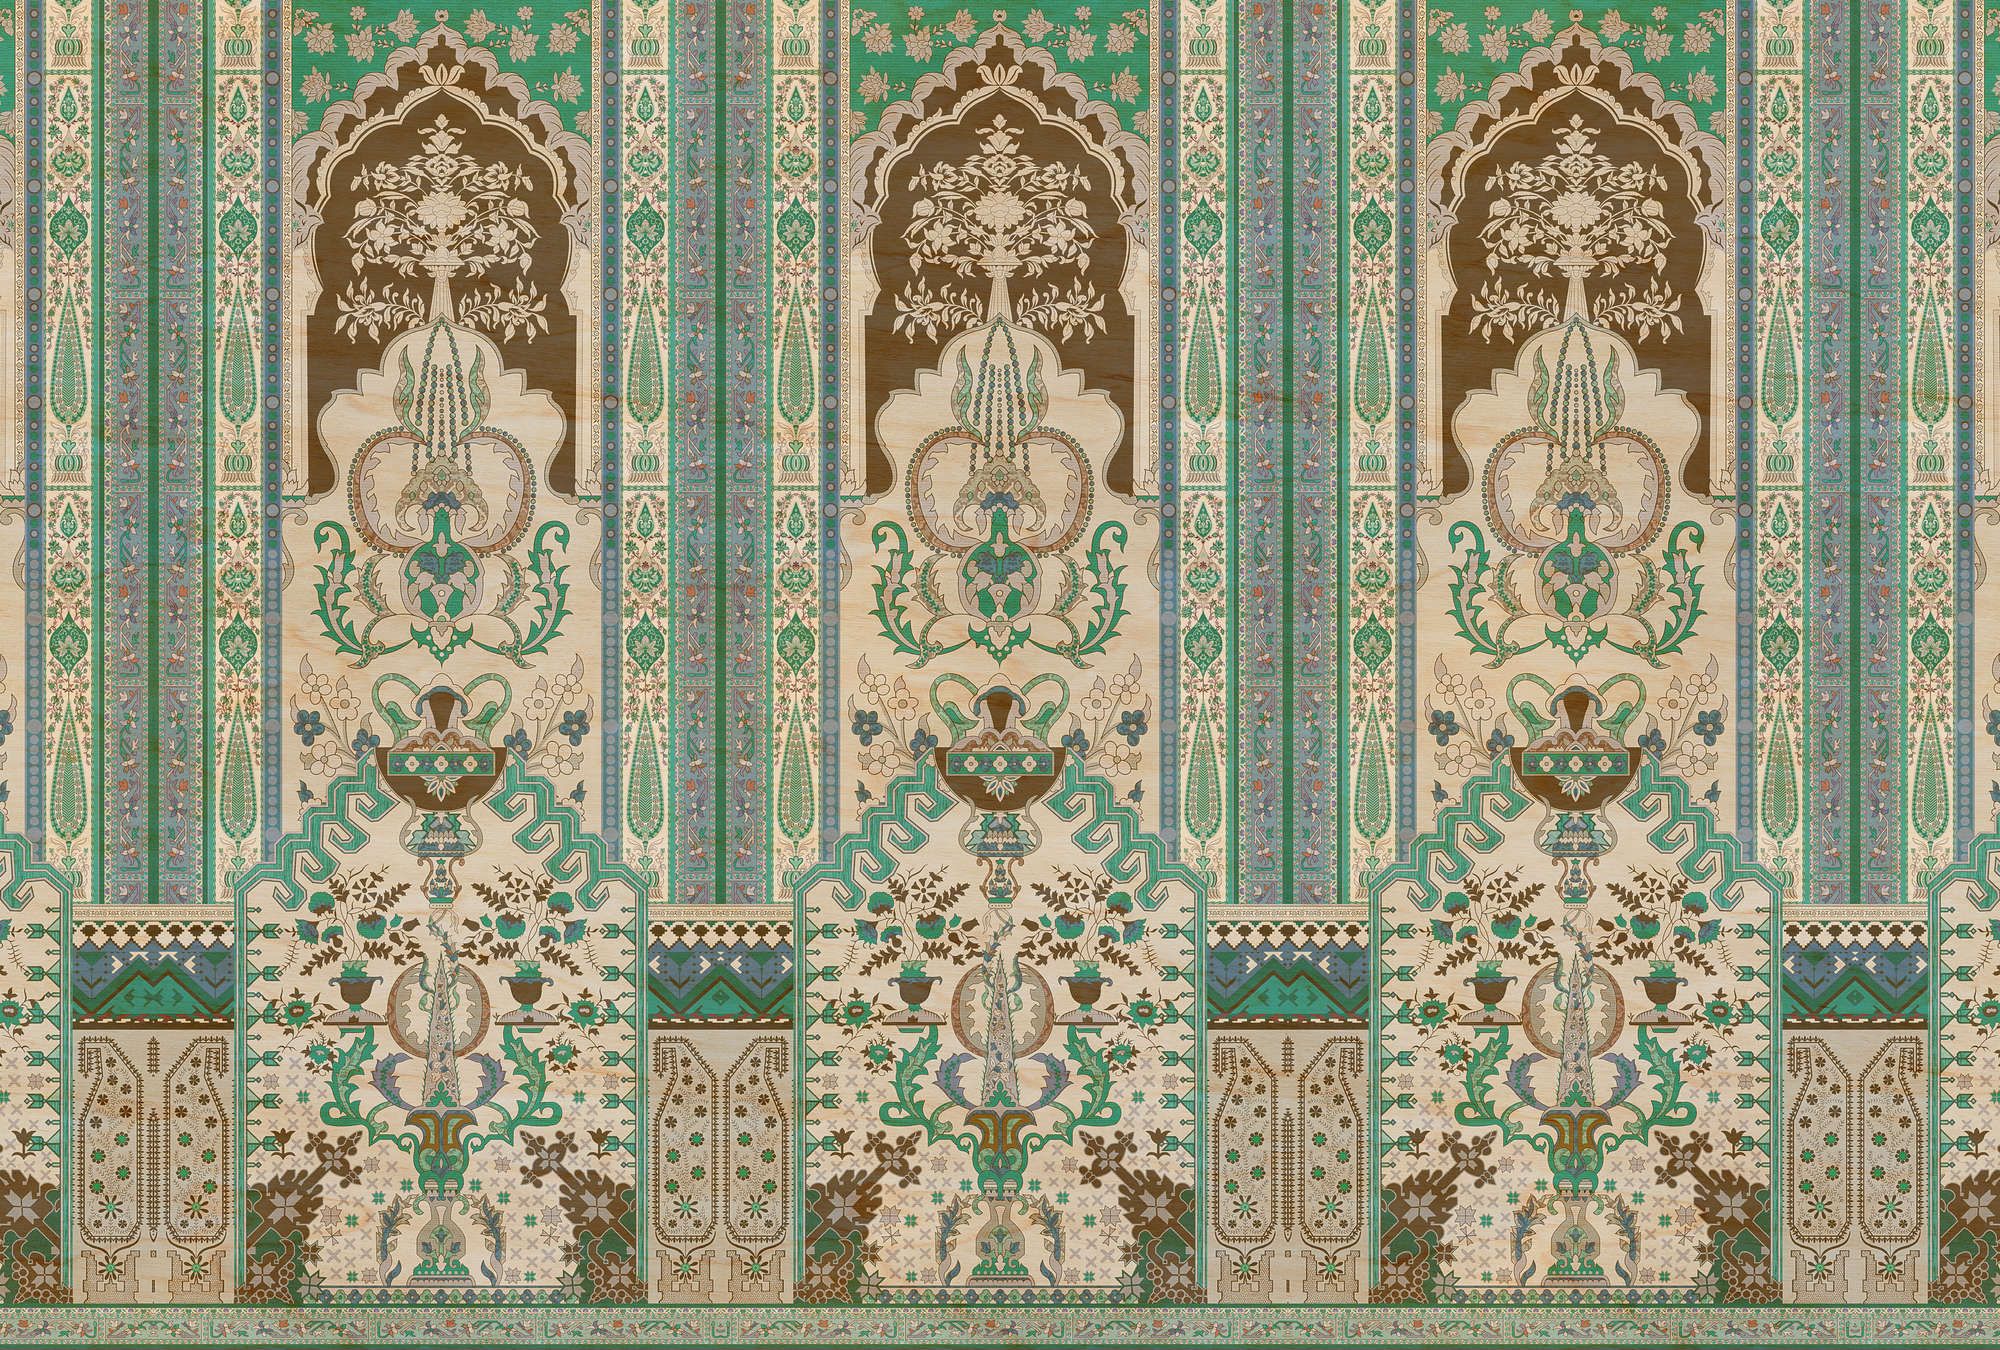             papier peint en papier panoramique »tara« - lambris ornemental avec structure en contreplaqué - vert, beige | Intissé lisse, légèrement nacré
        